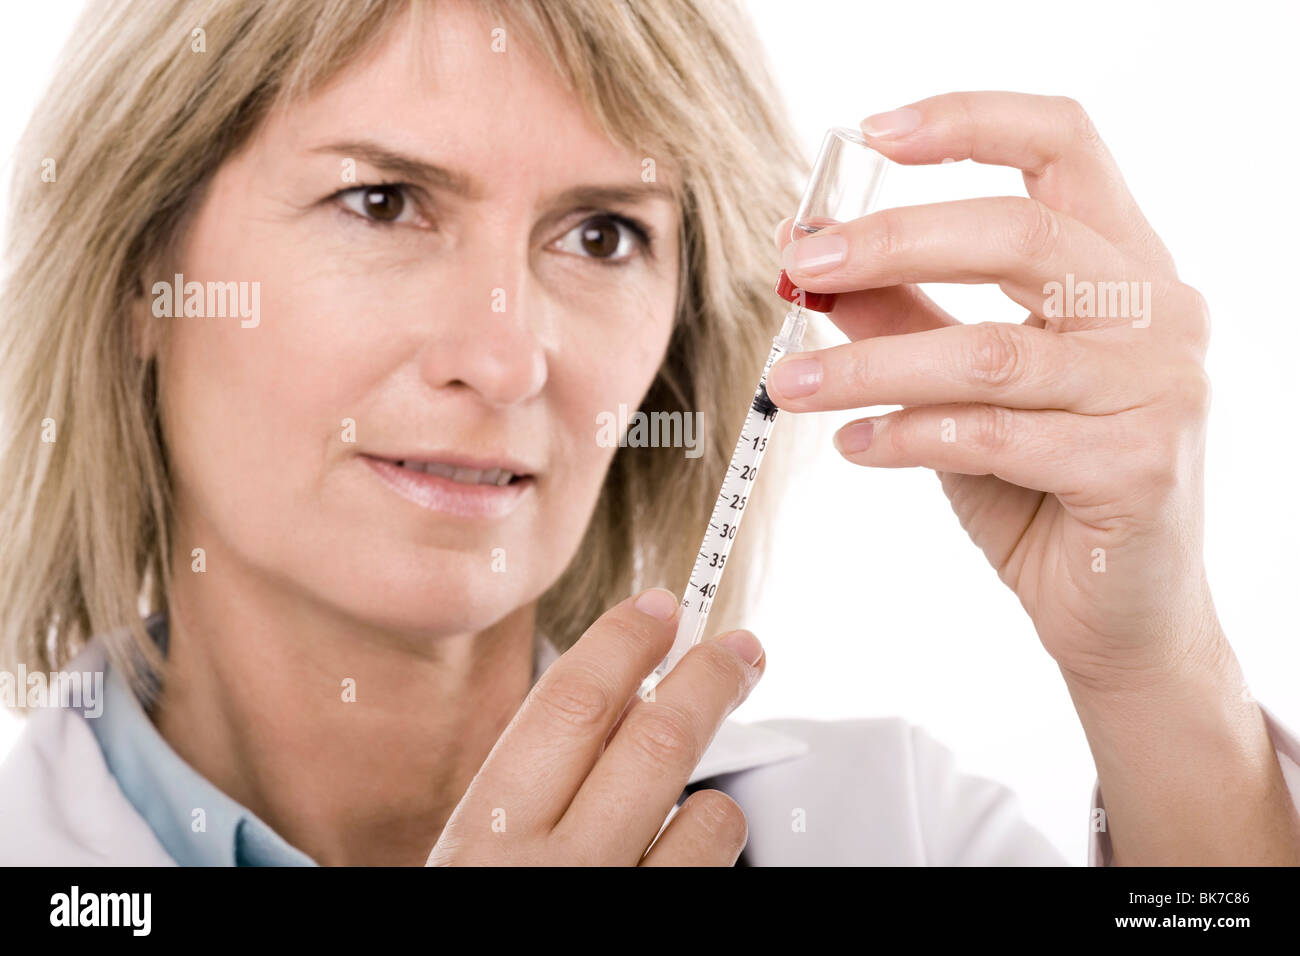 Doctor preparing a syringe Banque D'Images